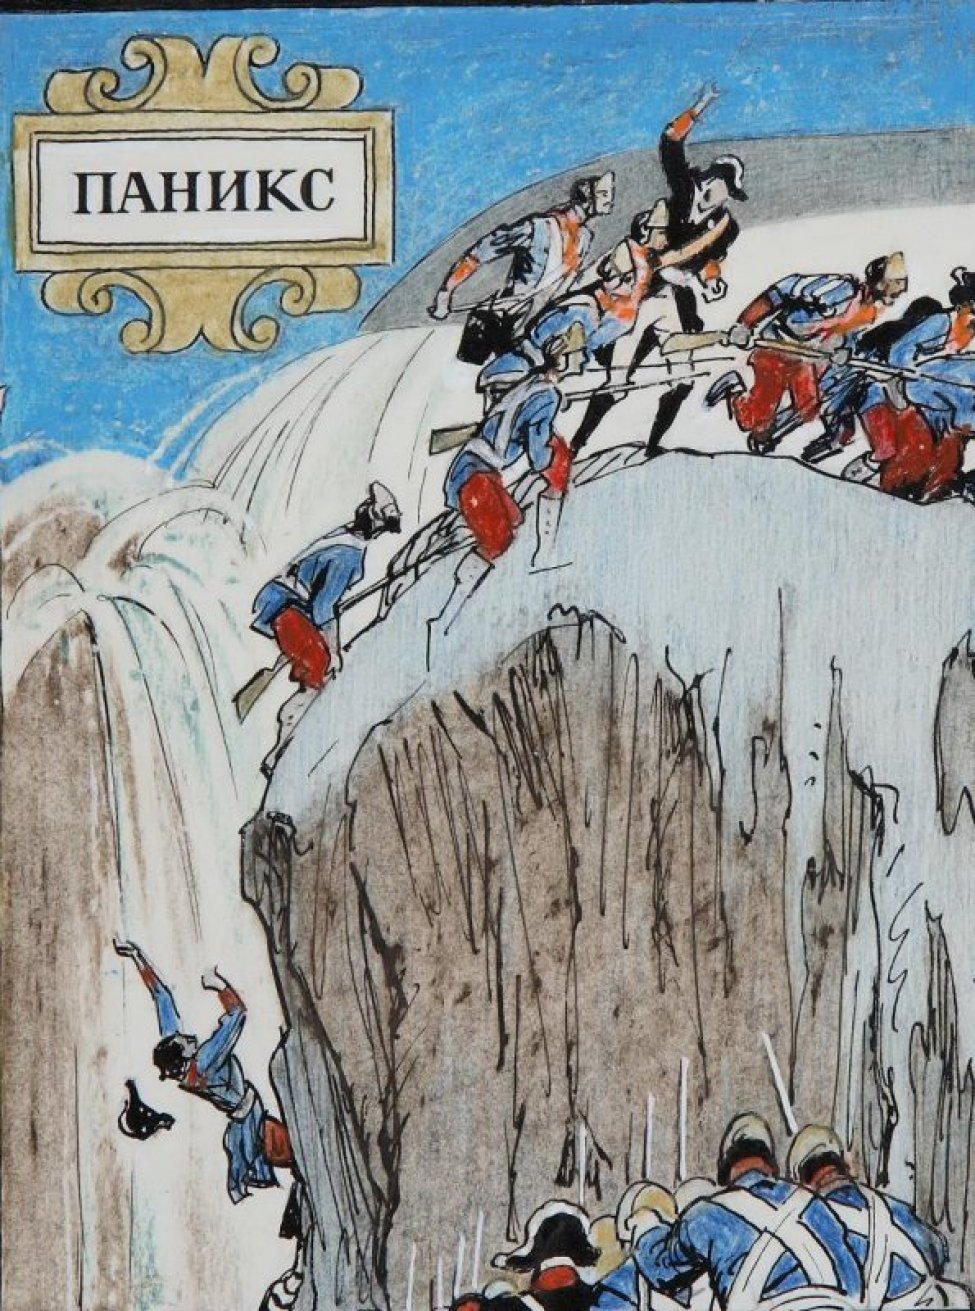 Изображены воины в голубых и черных мундирах, поднимающиеся  по отвесному склону на горное плато и группа воинов идущая по обледенелому полю плато.